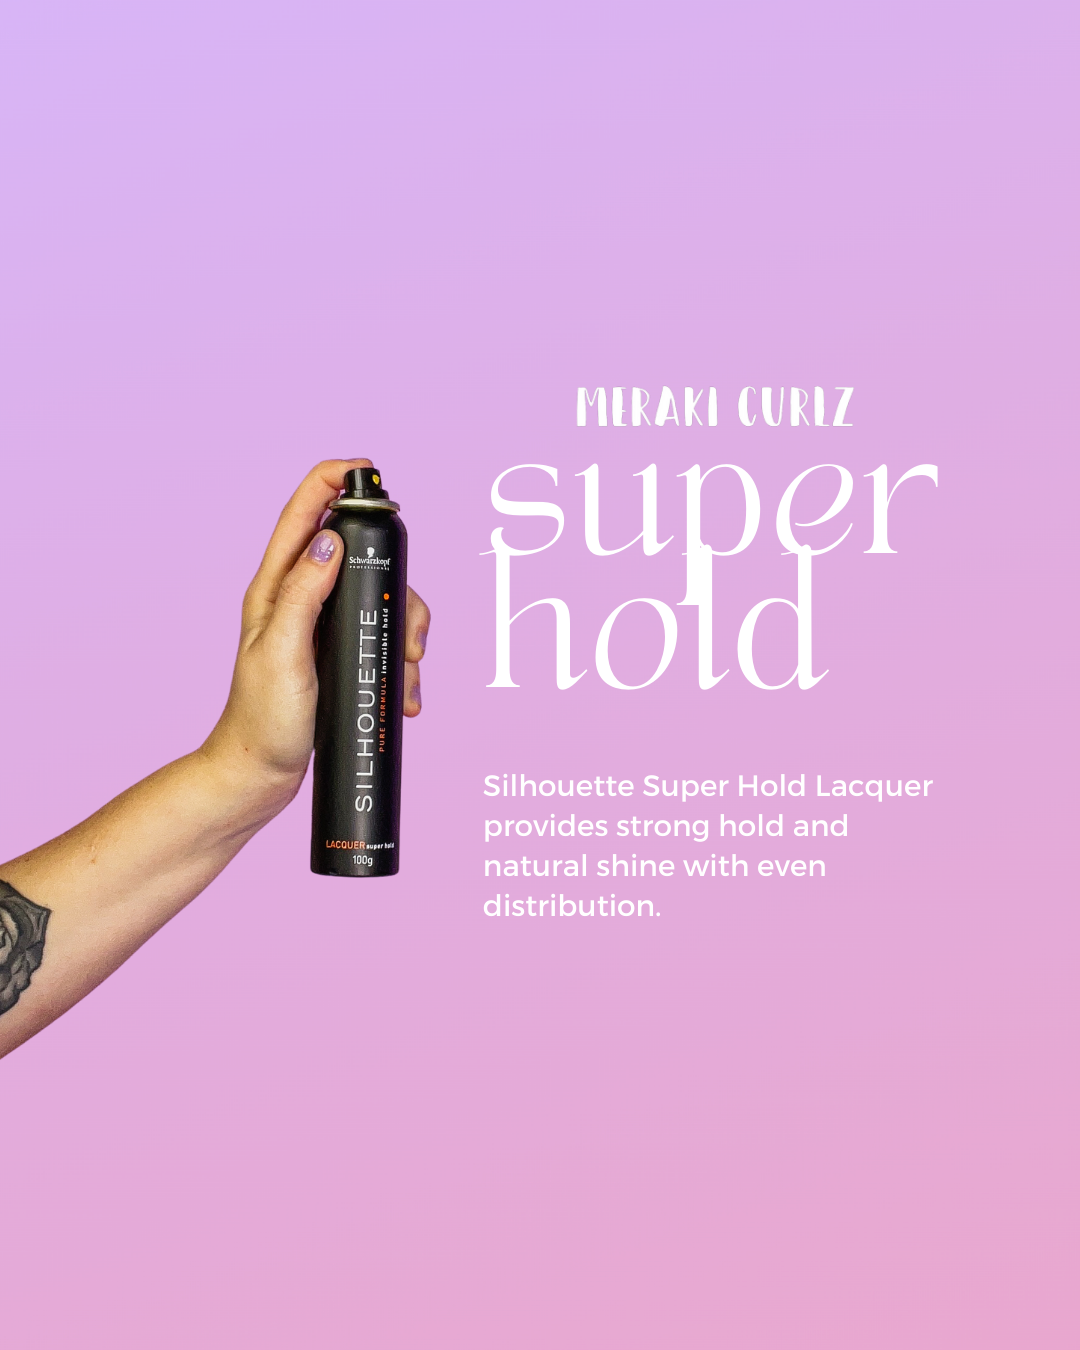 Schwarzkopf Silhouette Super Hold Lacquer Hairspray - merakicurlz